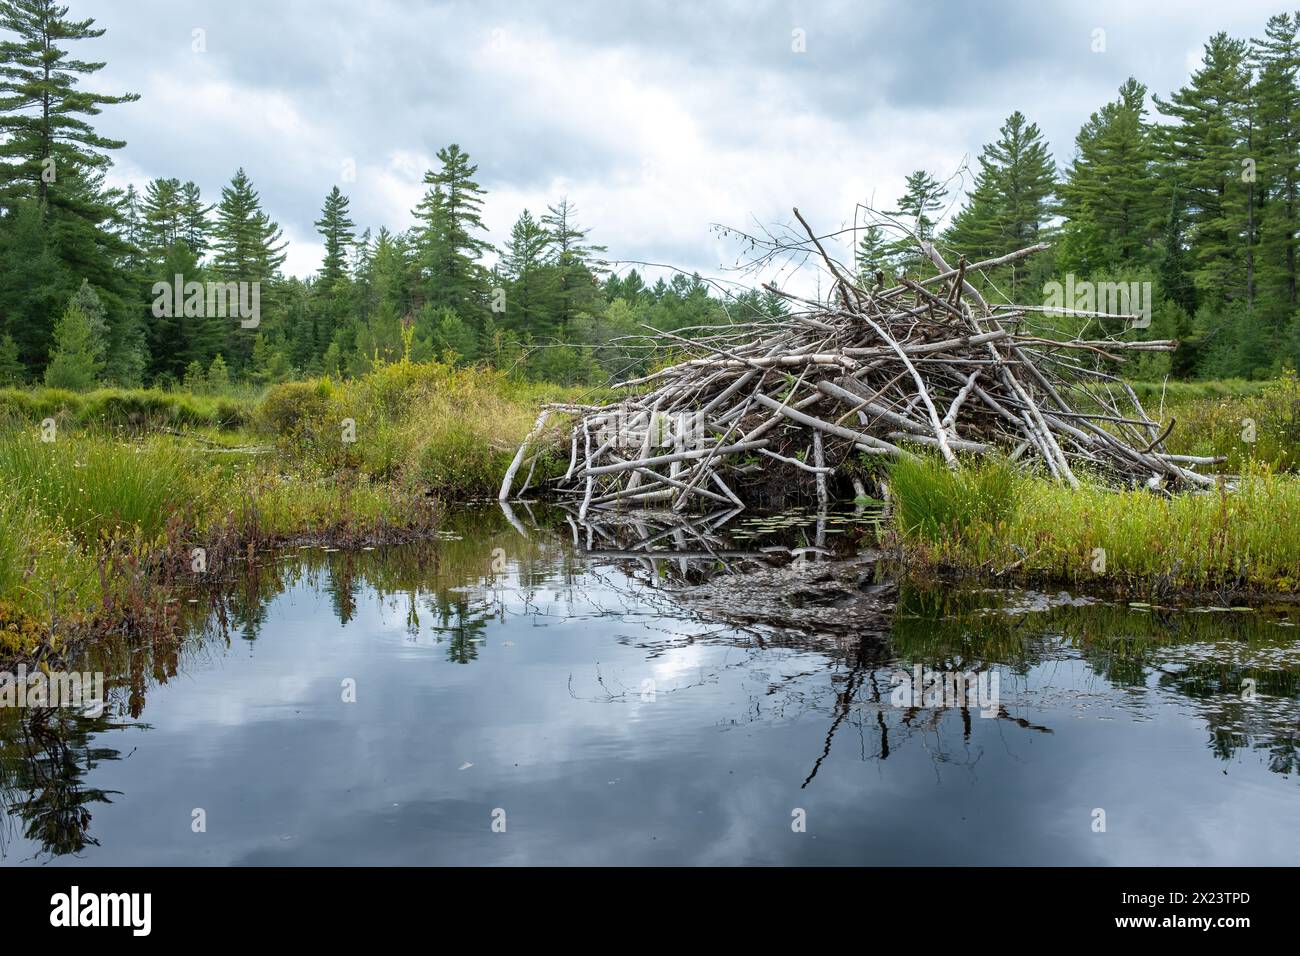 Beaver hut on a remote Adirondack lake Stock Photo